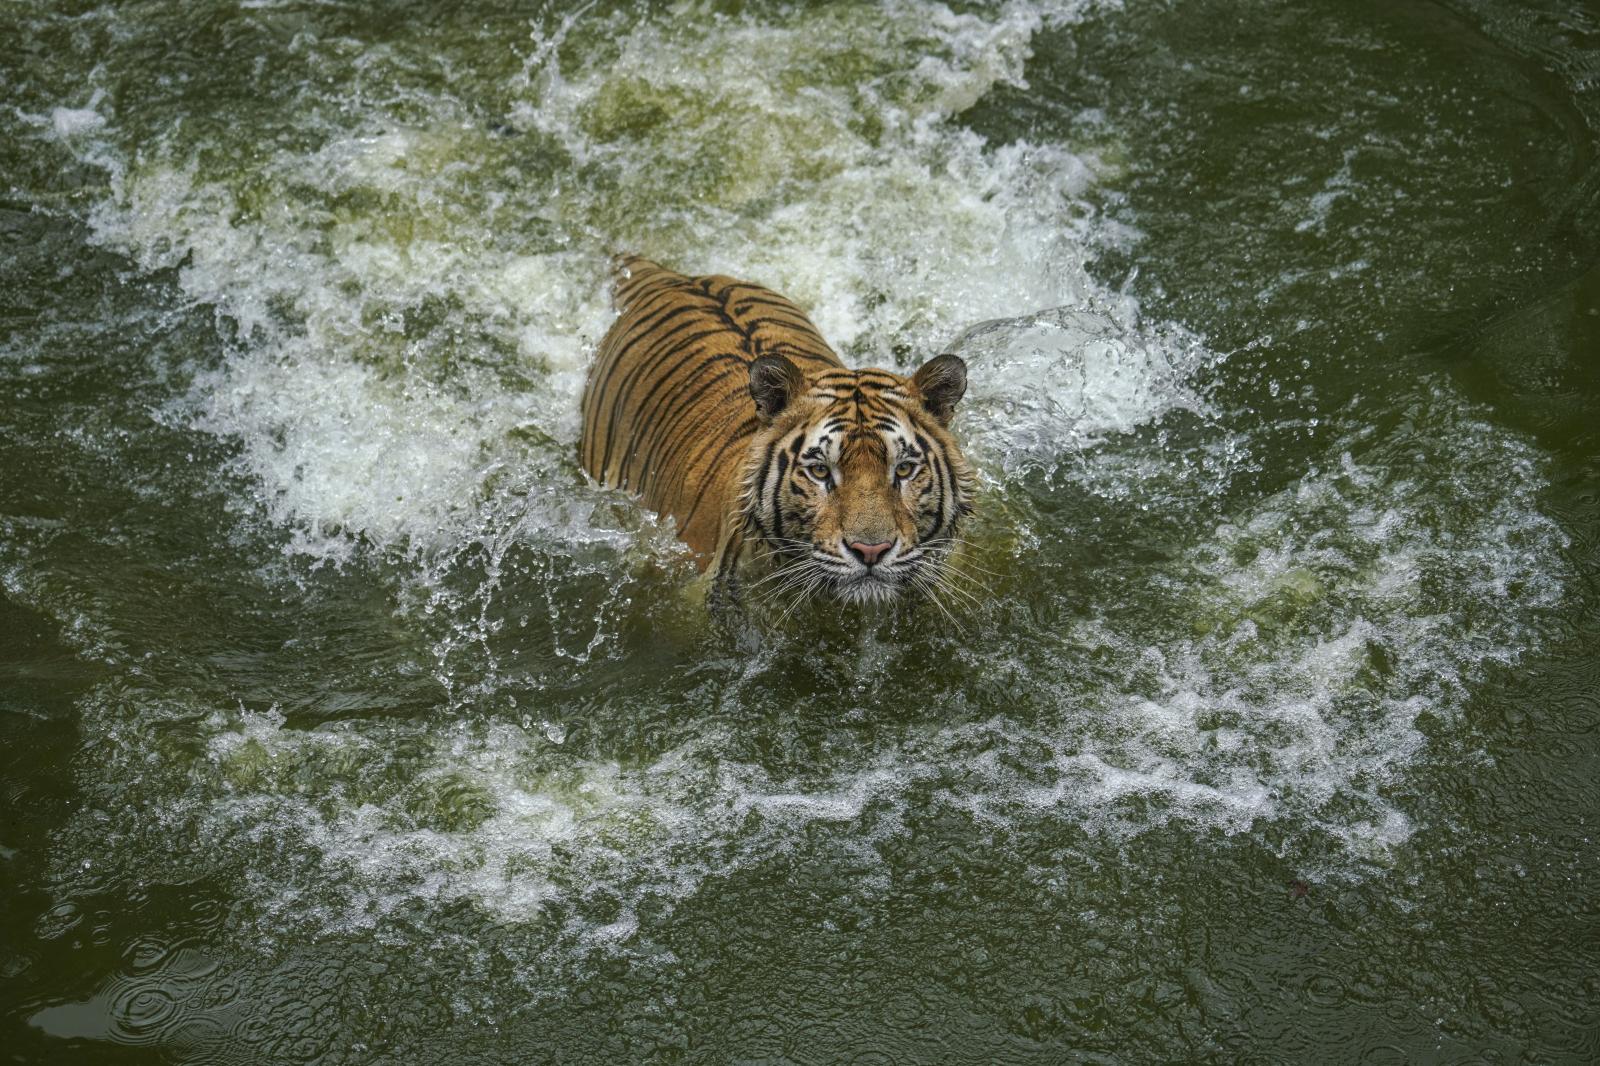 Bangladesh National Zoo | Buy this image